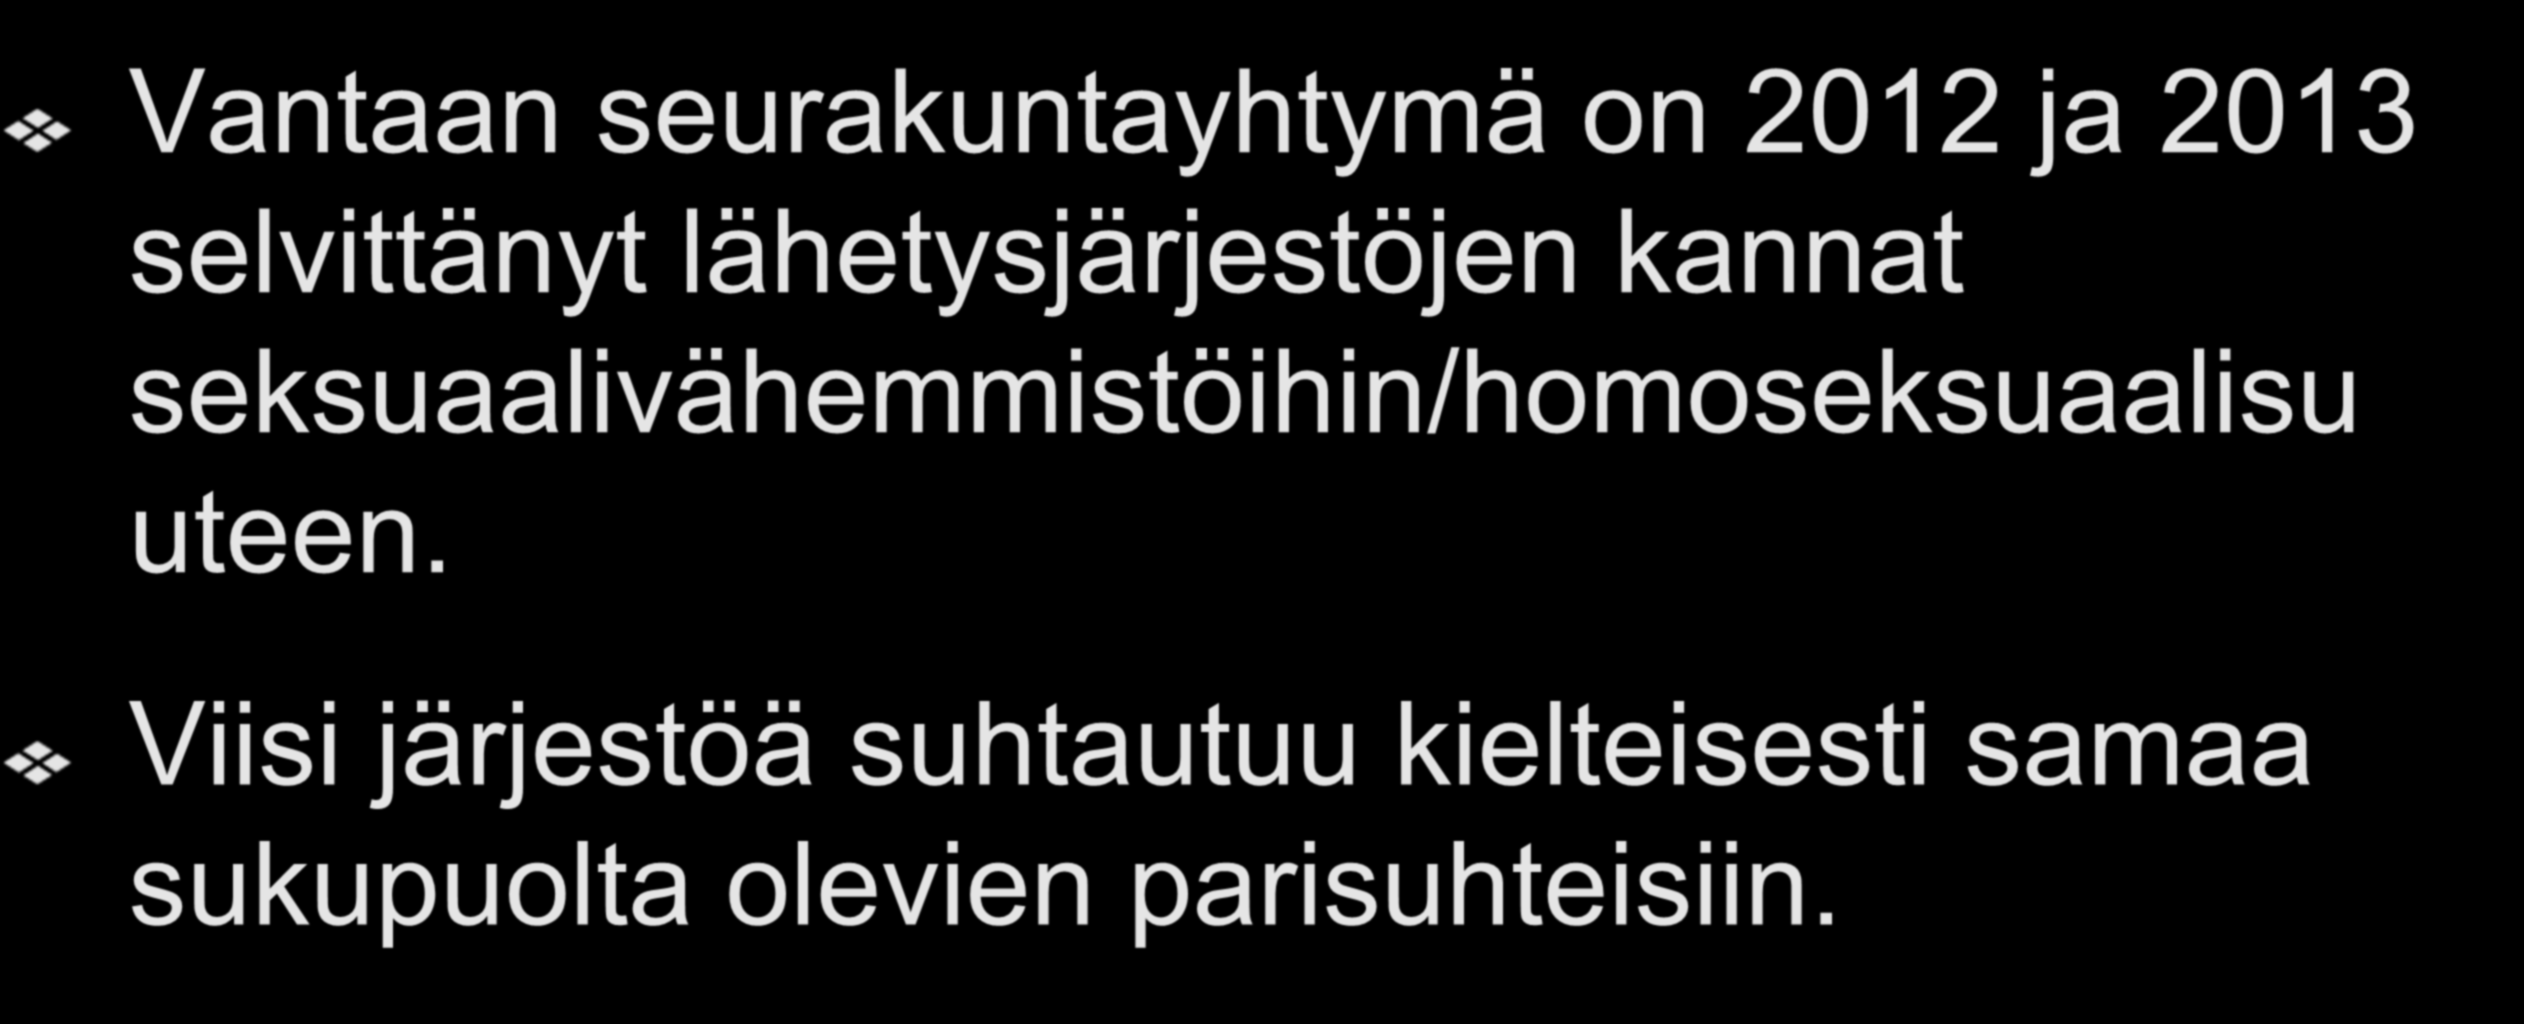 Järjestöt ja homoseksuaalisuus Vantaan seurakuntayhtymä on 2012 ja 2013 selvittänyt lähetysjärjestöjen kannat